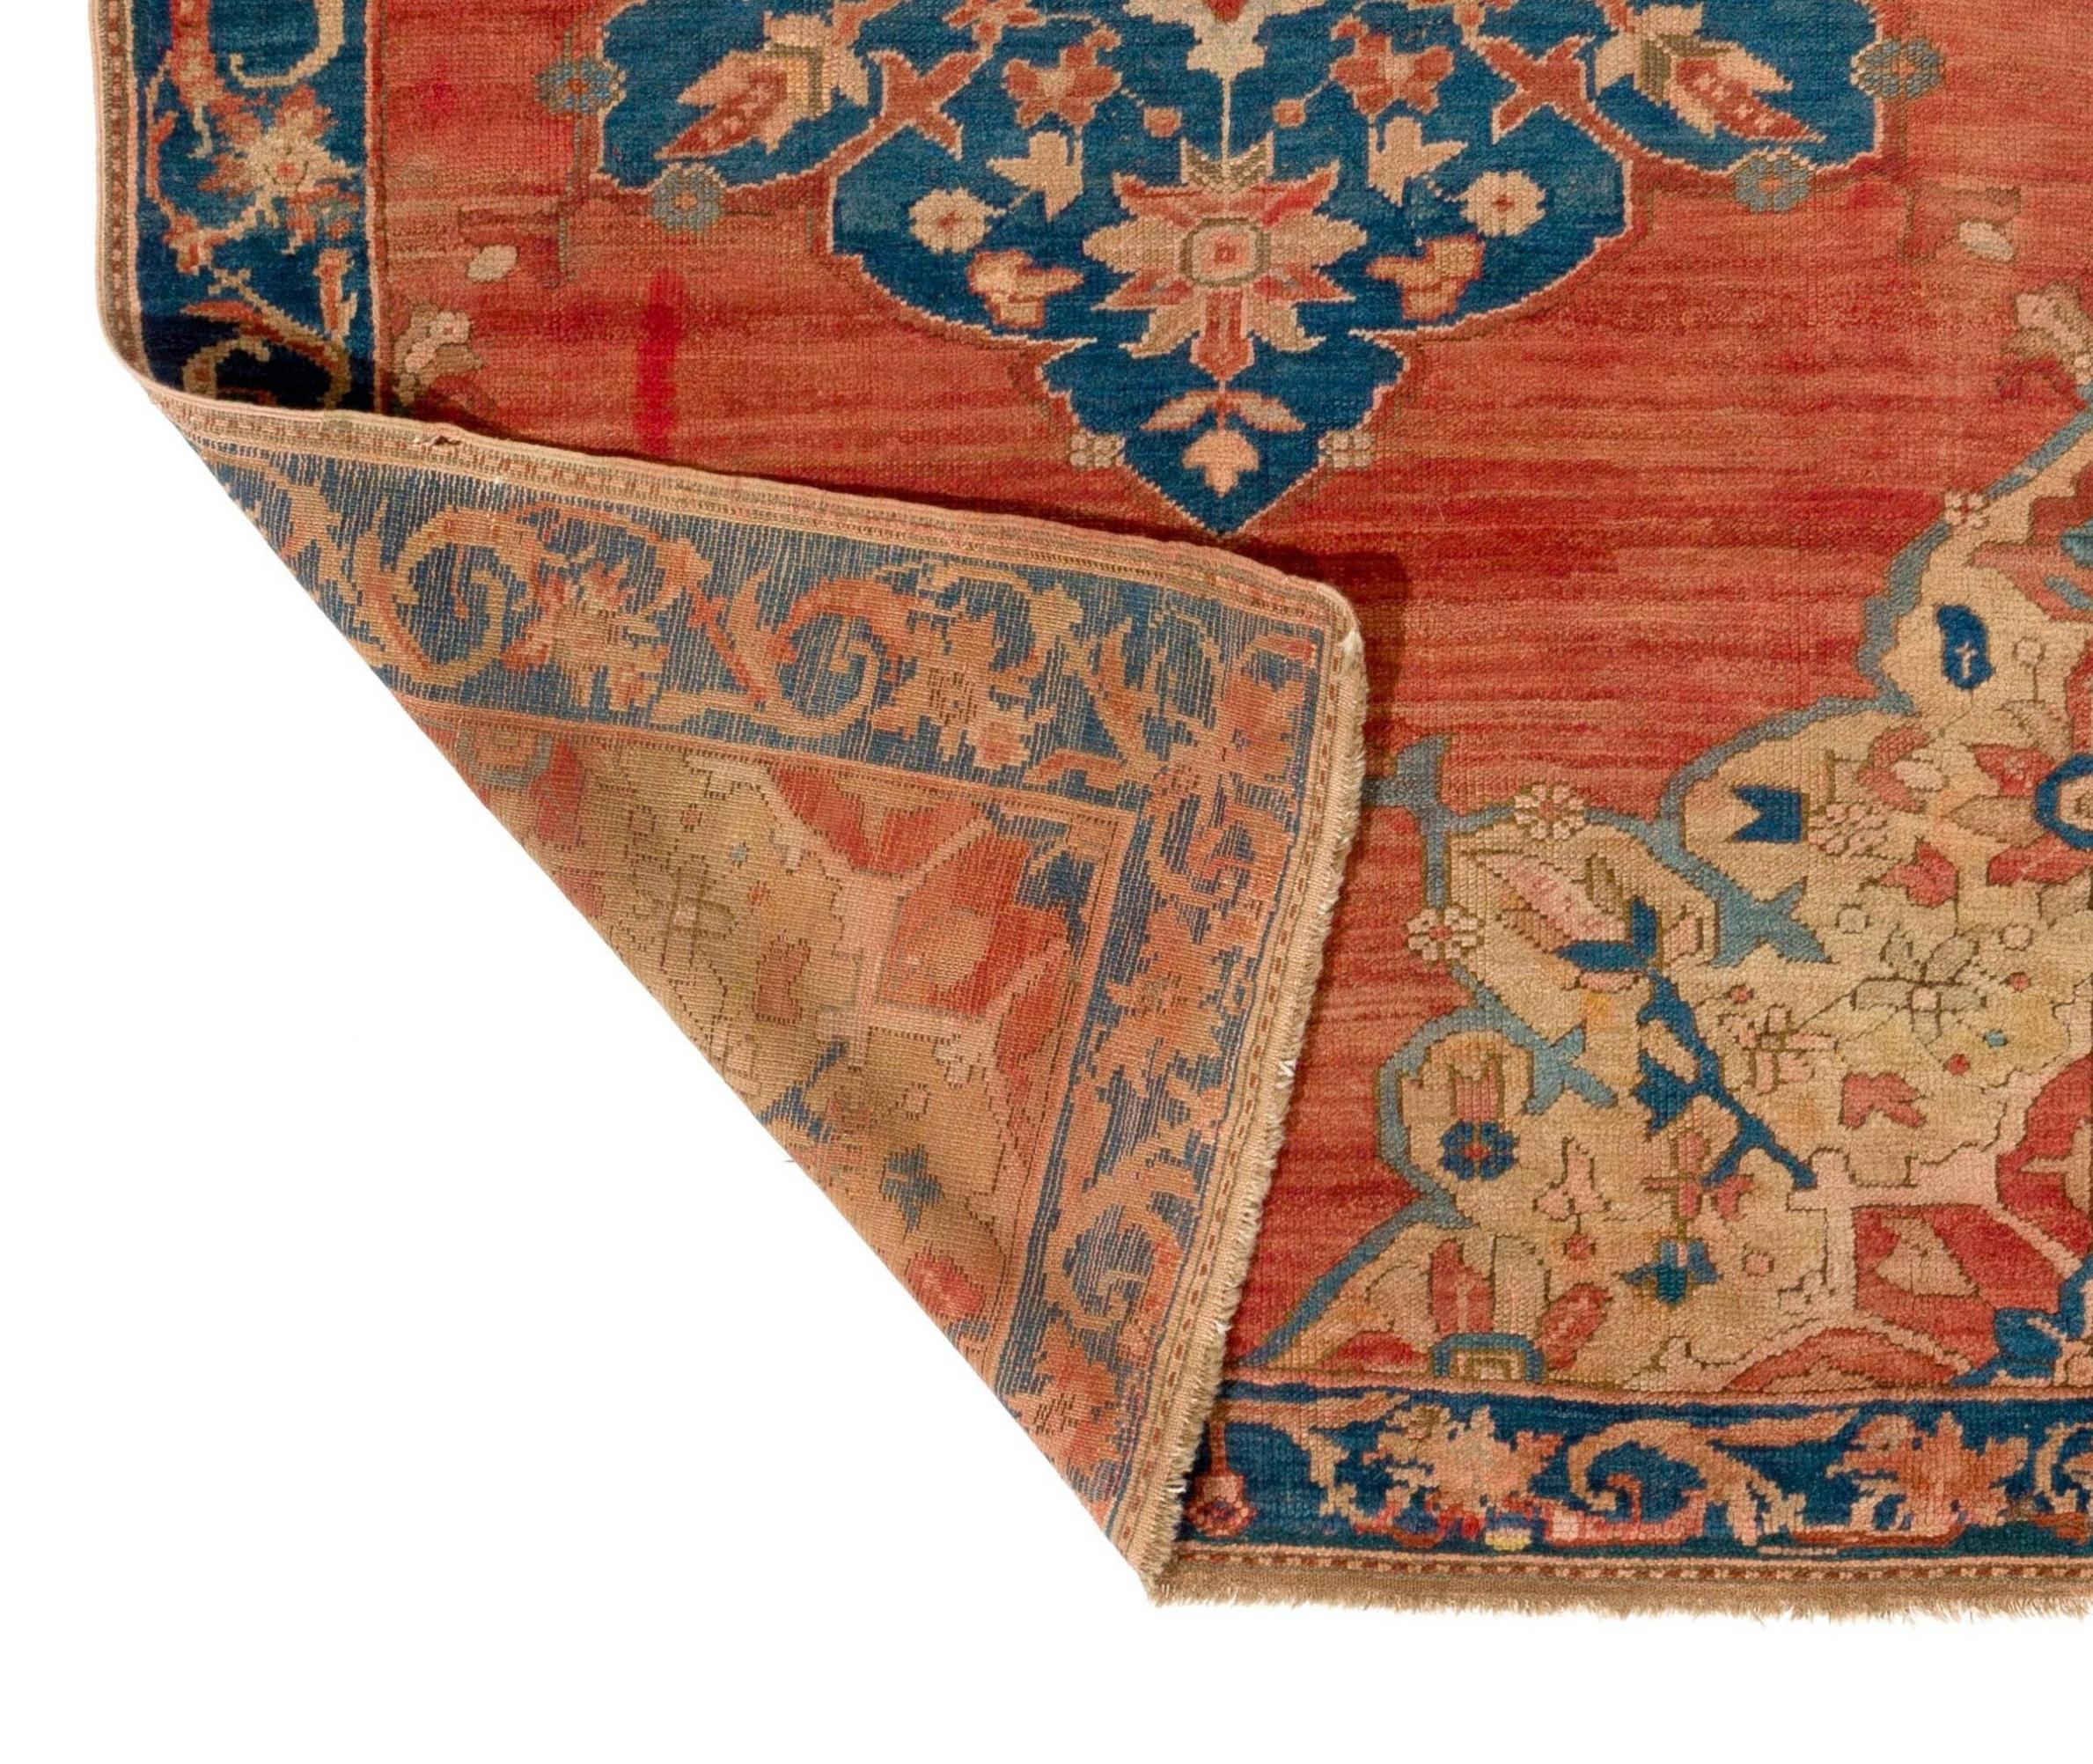 Ein antiker handgeknüpfter südwestanatolischer Teppich aus Fethiye, der in der Antike Telmessos und im 19. Jahrhundert Megri hieß. Dieser schöne Teppich hat eine zeitlose, vielschichtige, eklektische Qualität. Mit seinem eleganten, geschwungenen